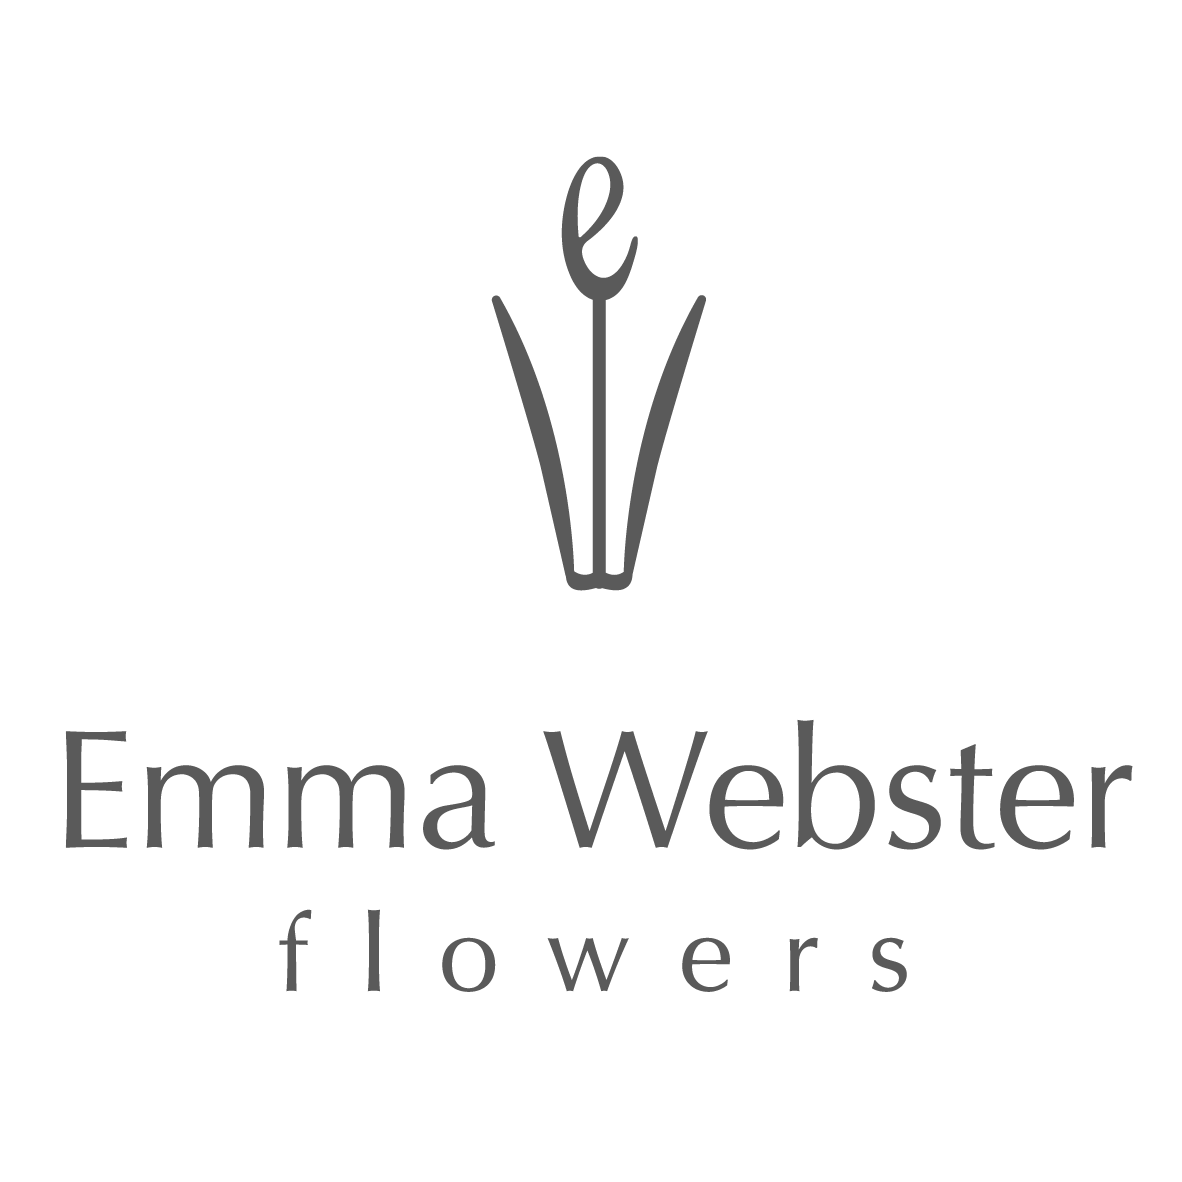 Emma Webster Flowers